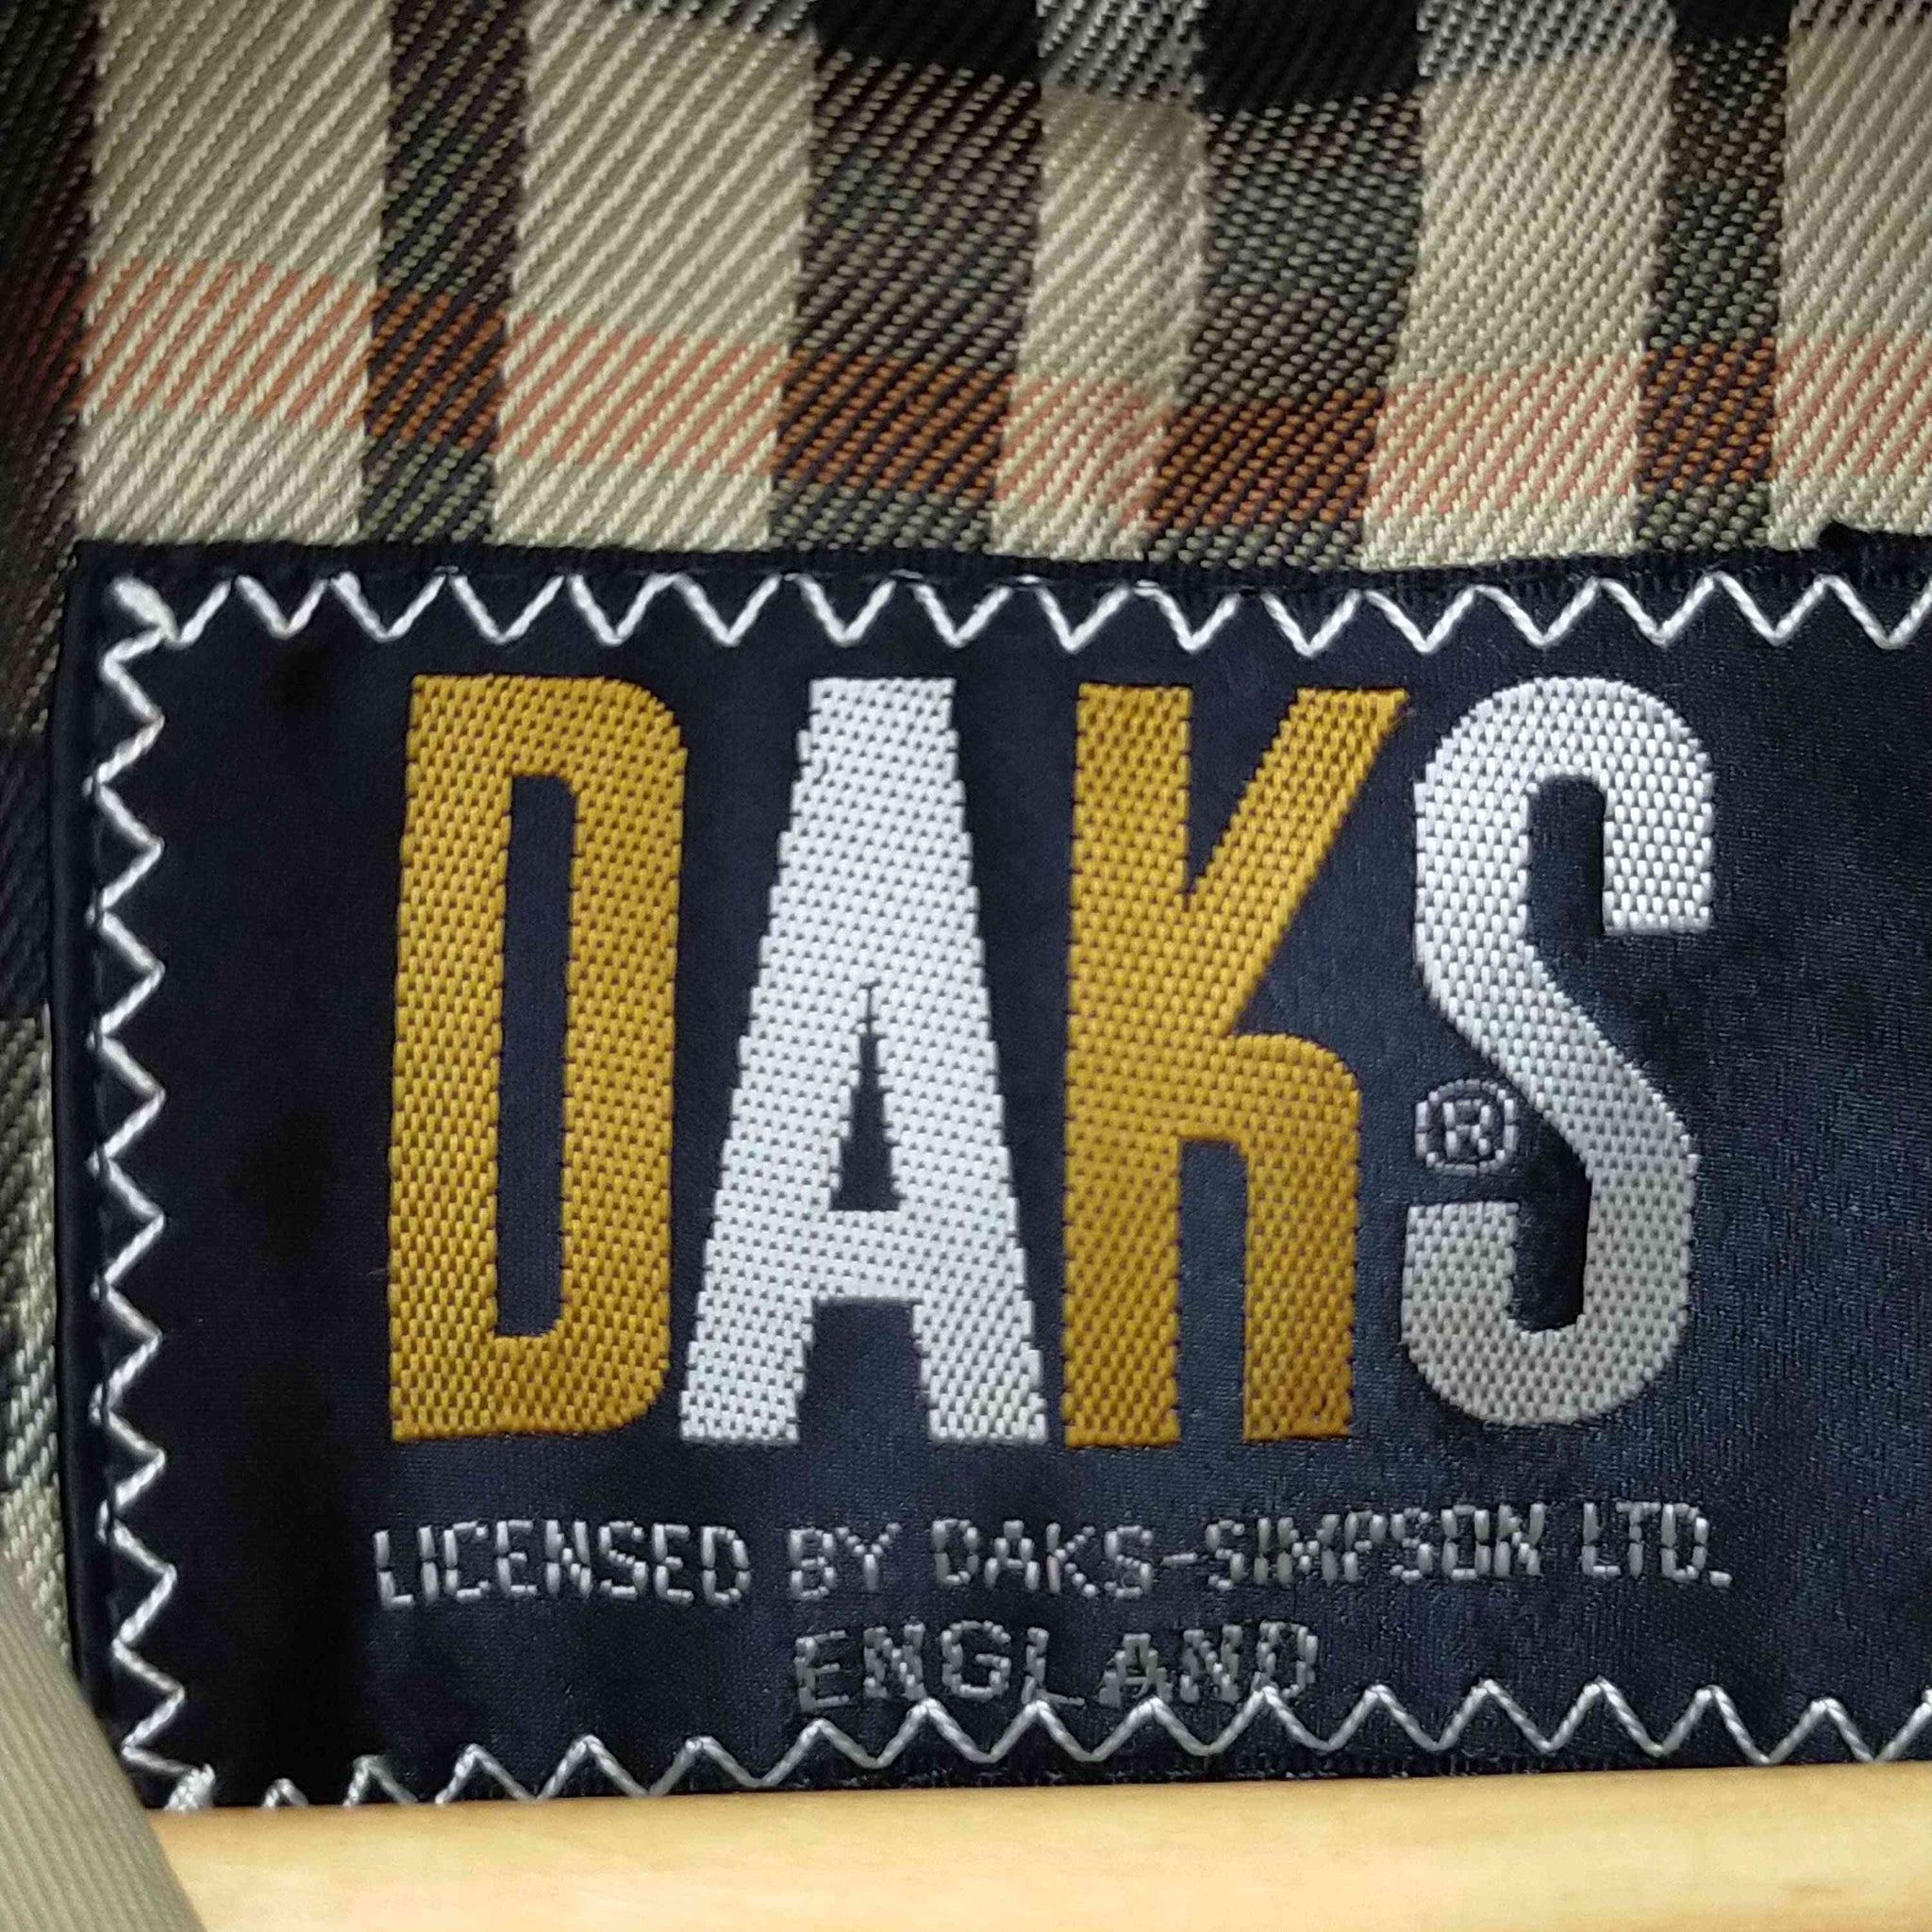 DARKS(ダックス)イングランド製玉蟲トレンチコート